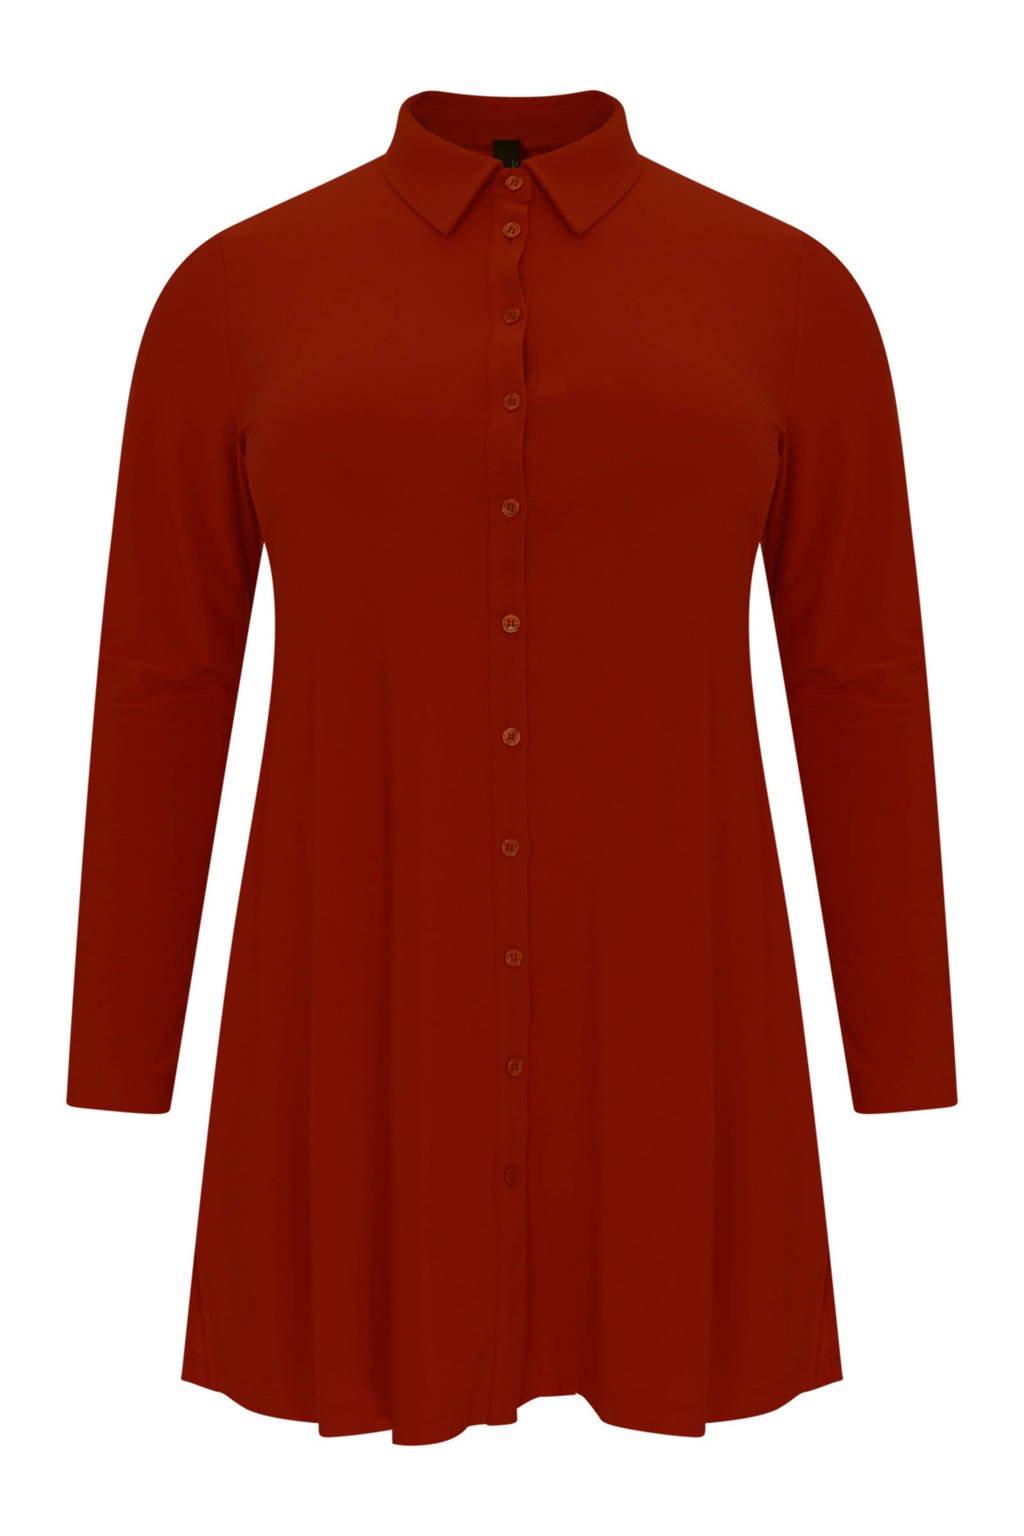 Roodbruine dames Yoek blouse van travelstof met lange mouwen, klassieke kraag, knoopsluiting en plooien